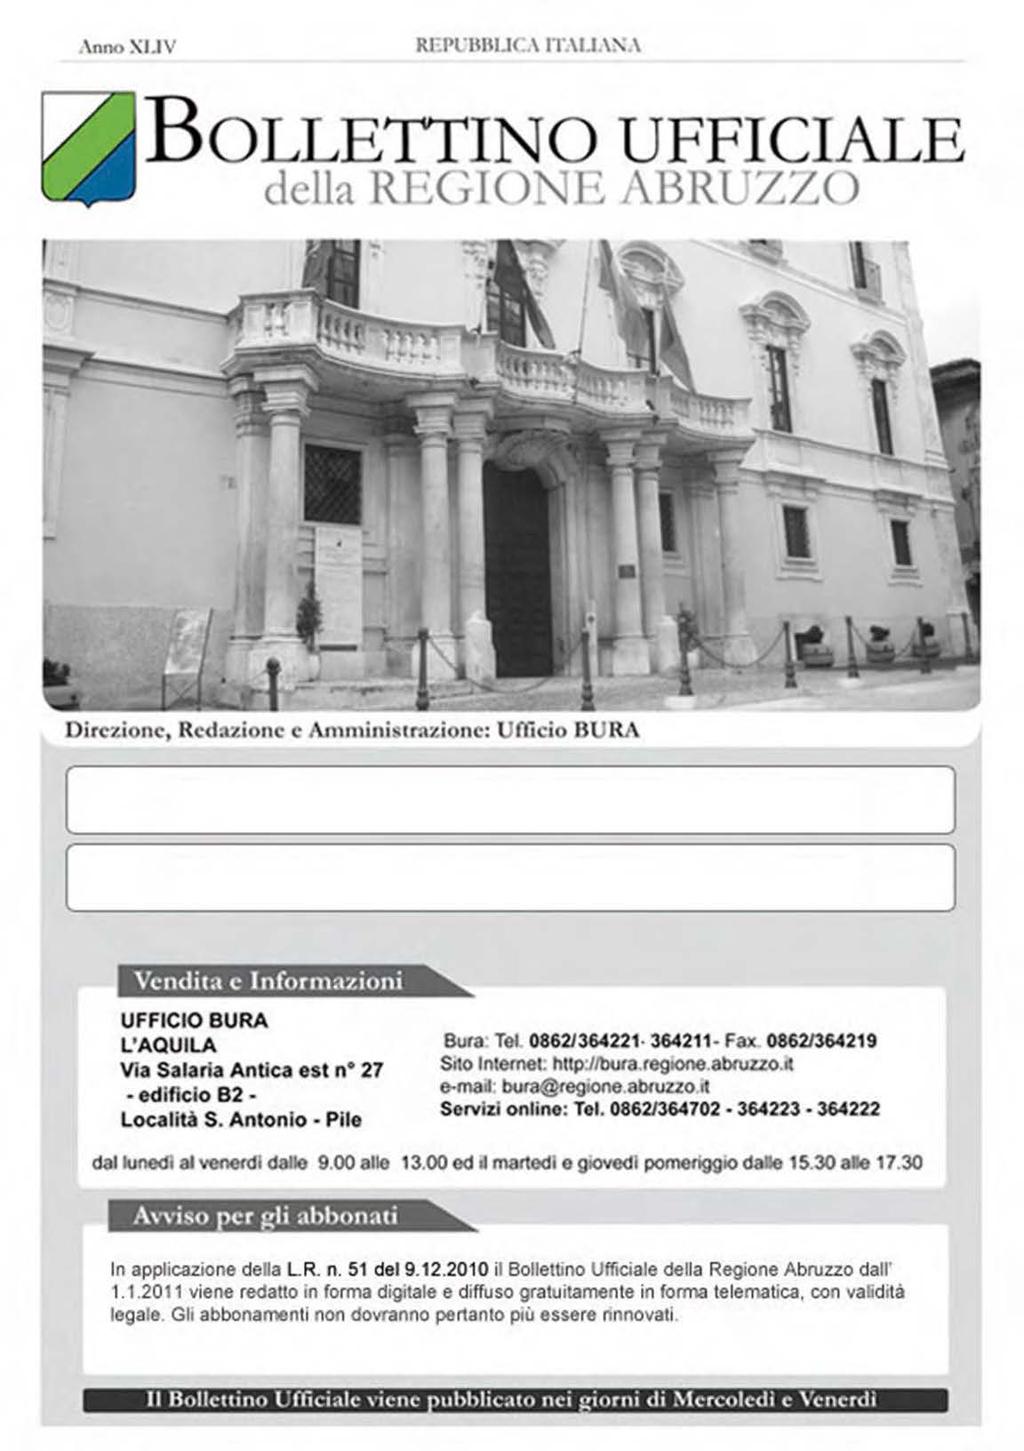 Anno XLIV - N.41 Speciale (12.04.2013) Bollettino Ufficiale della Regione Abruzzo Pag. 1 Direzione, Redazione e Amministrazione: Ufficio BURA Speciale n.